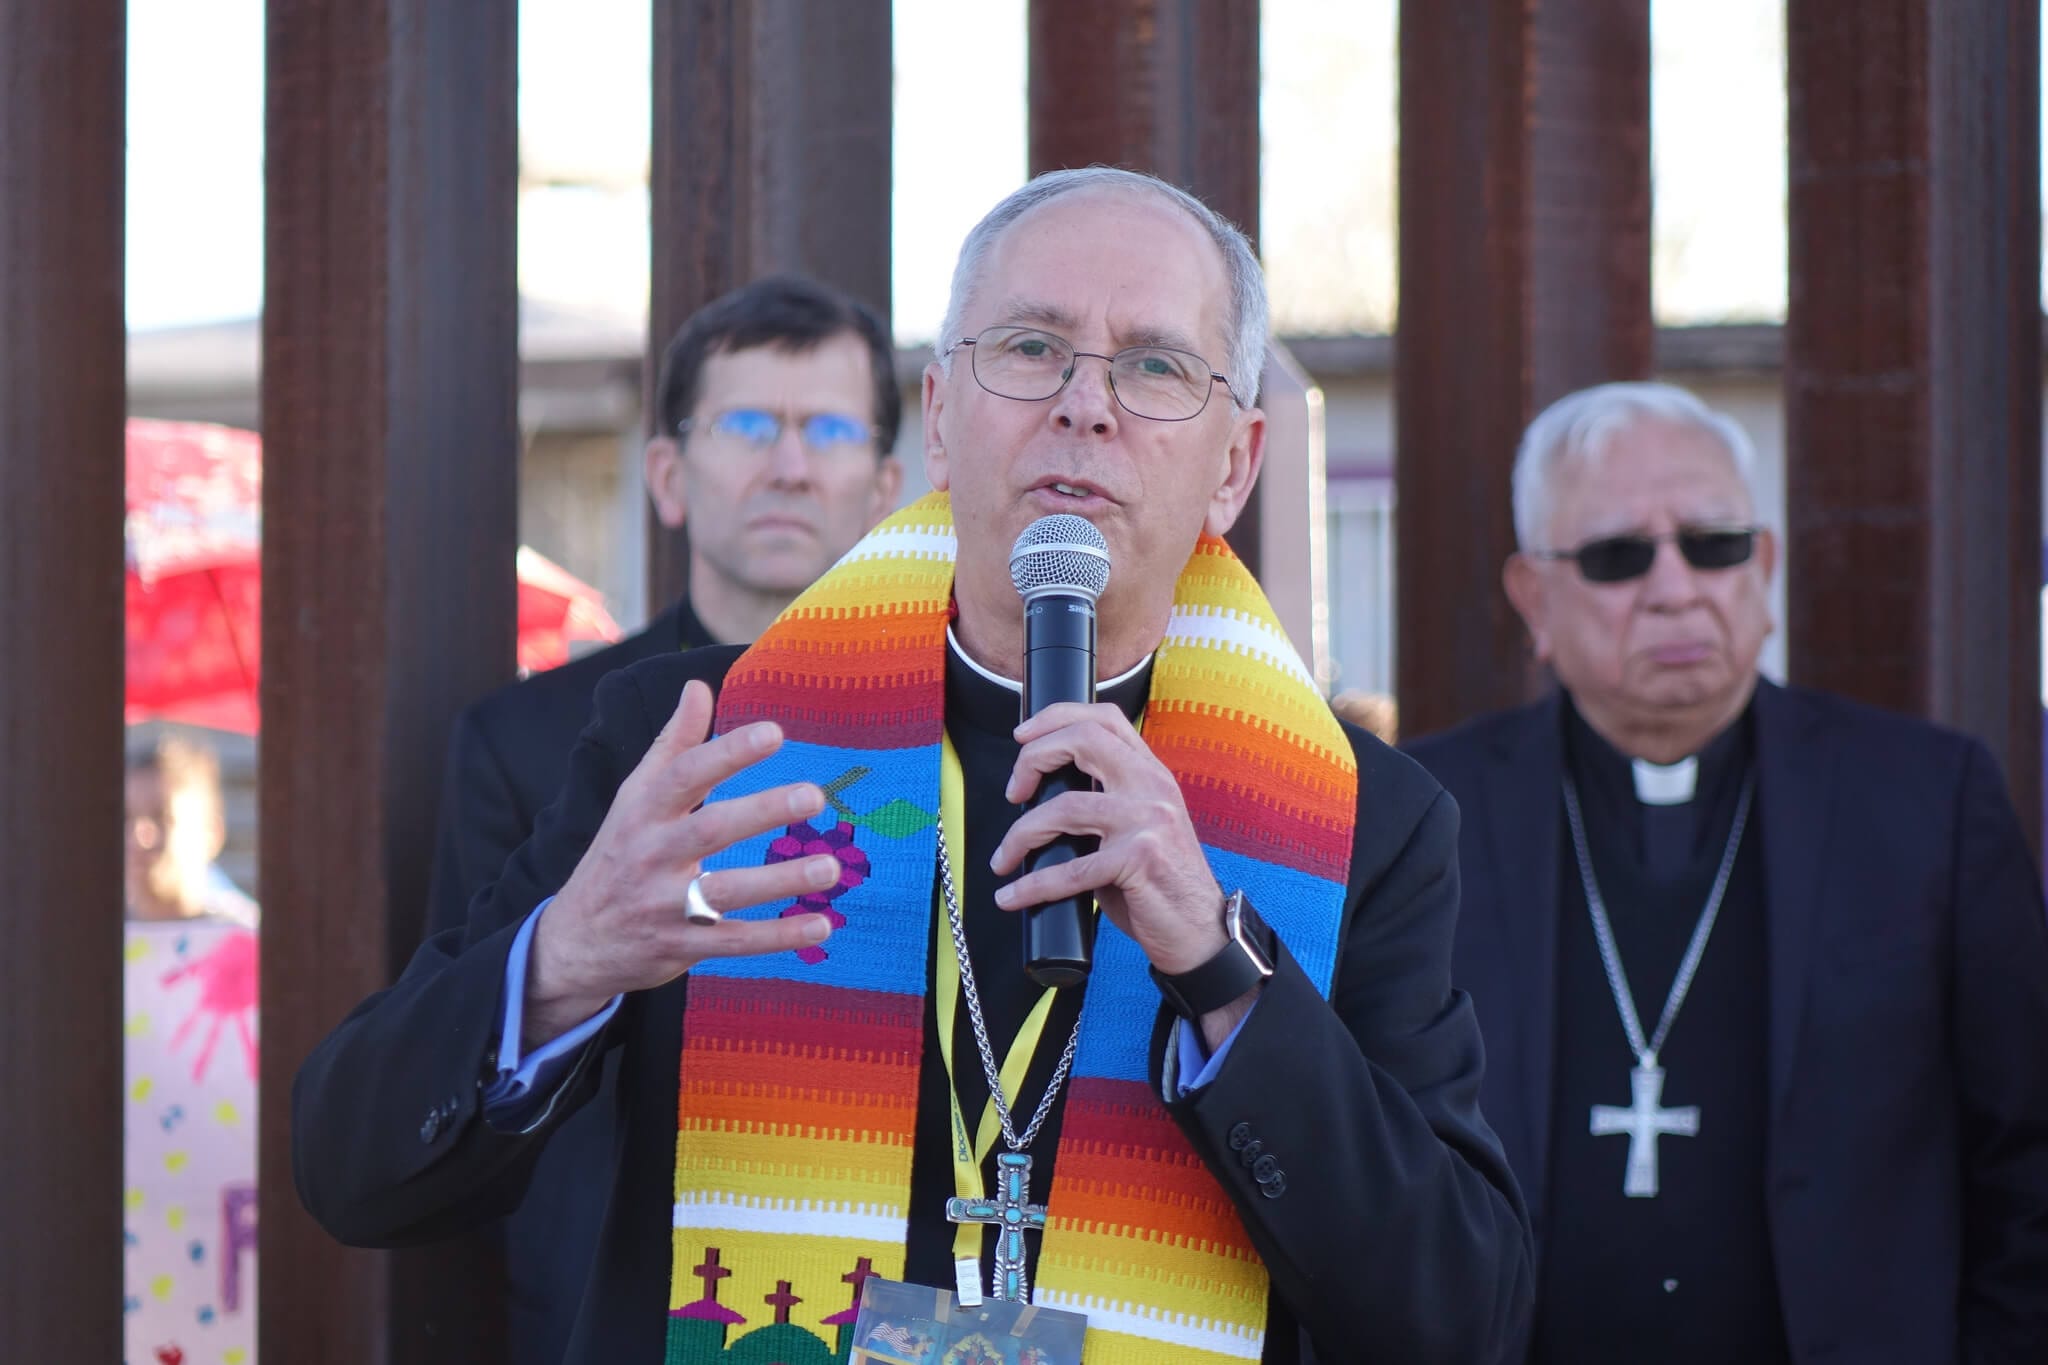 Catholic bishop Mark Seitz at the US-Mexico border wall